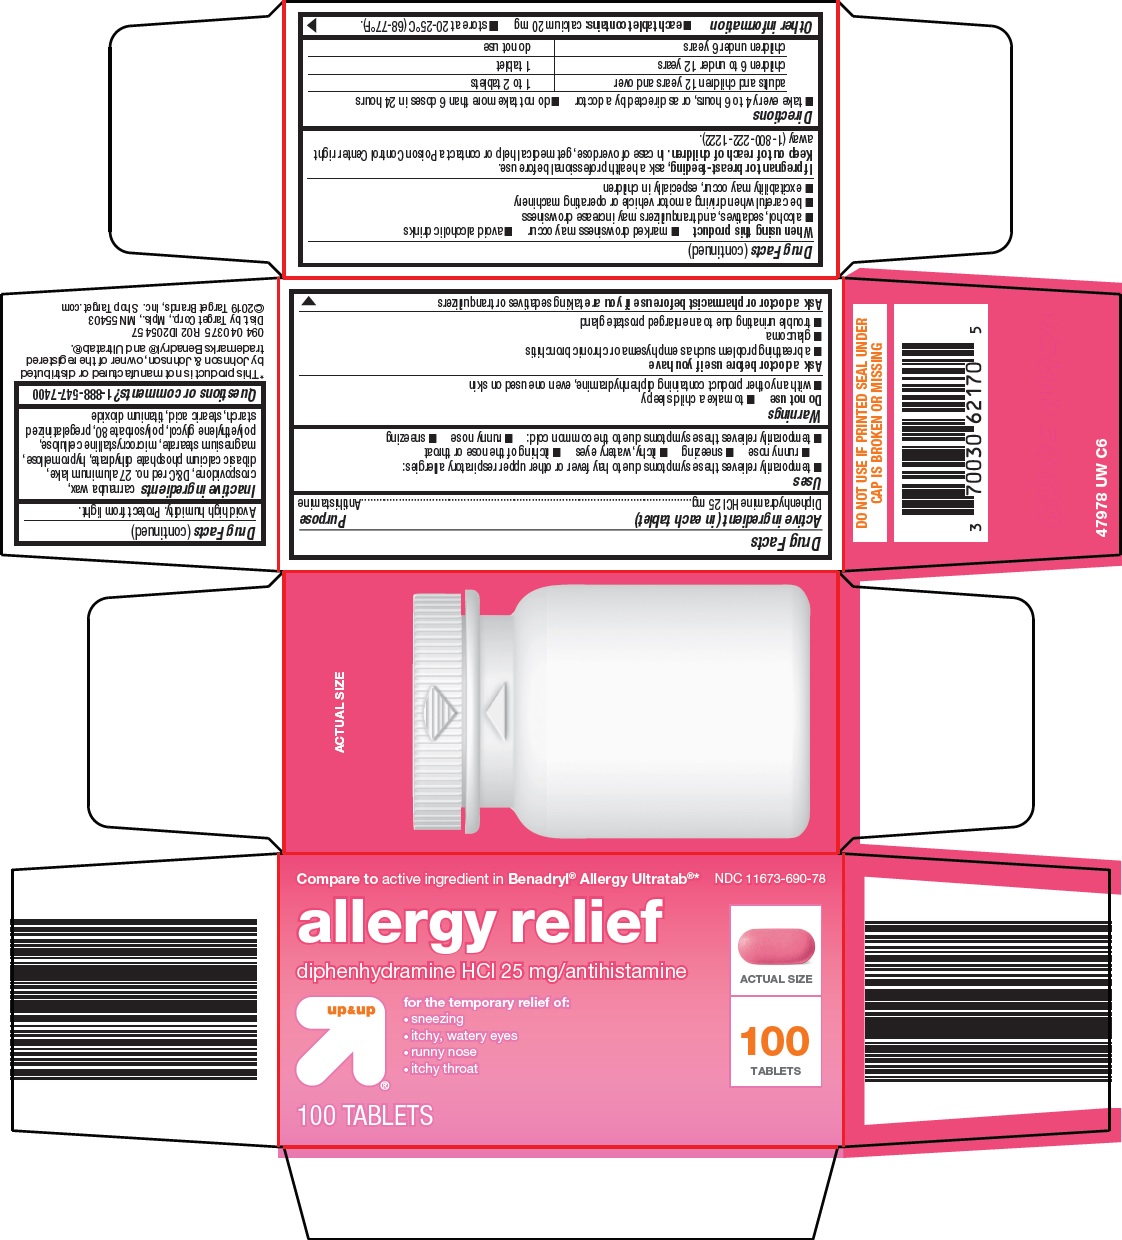 479-uw-allergy-relief.jpg